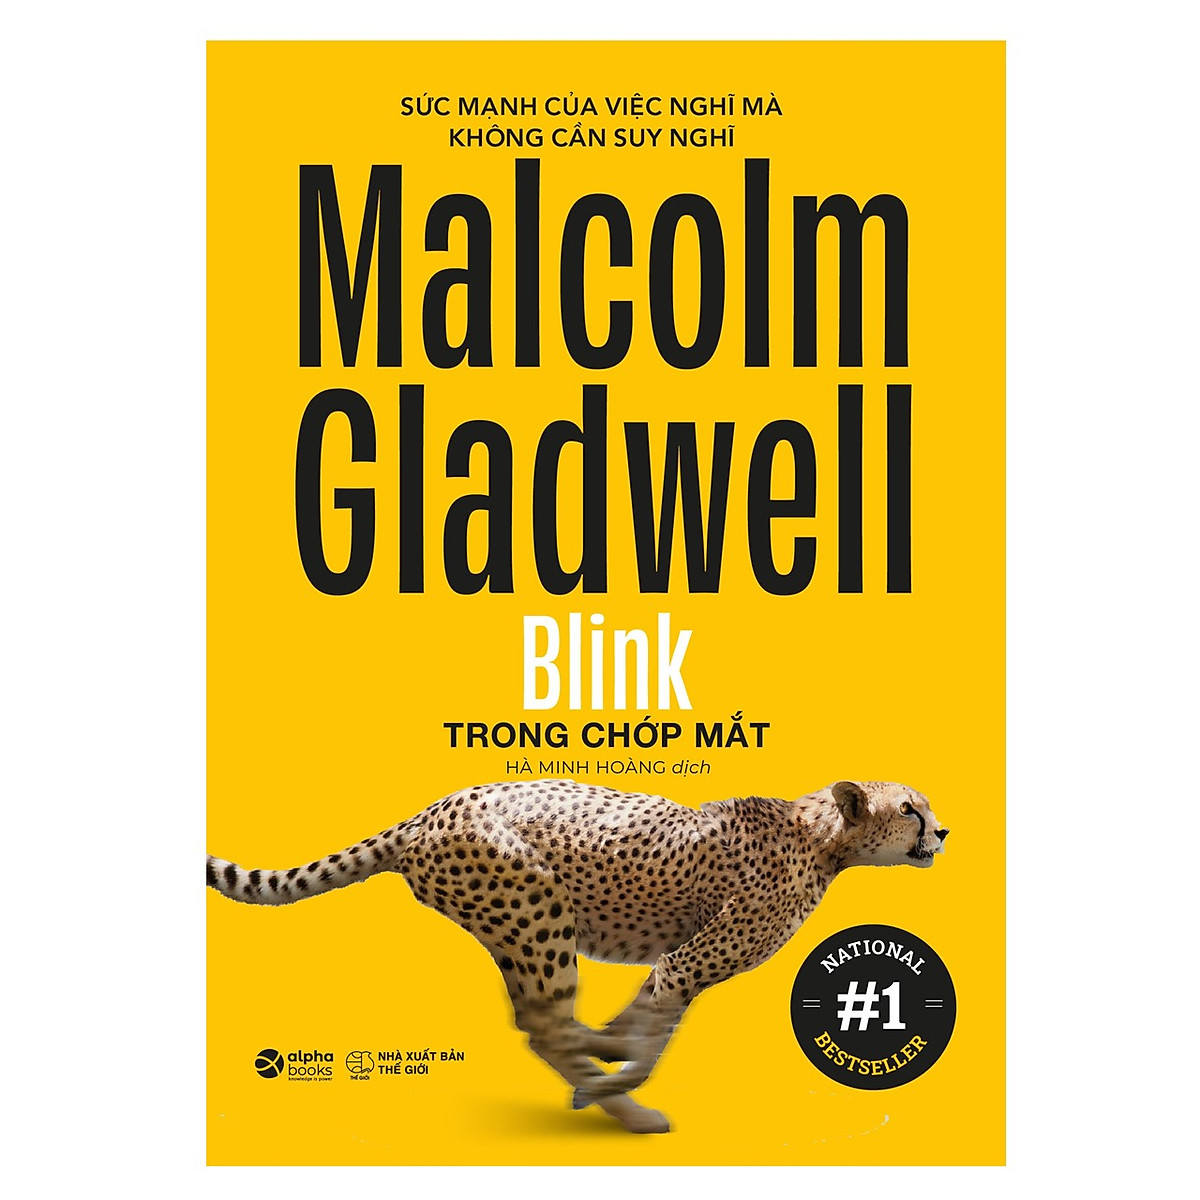 Trọn Bộ 6 Cuốn Sách Malcolm Gladwell: Những Kẻ Xuất Chúng + Điểm Bùng Phát + Trong Chớp Mắt + Chú Chó Nhìn Thấy Gì + David Và Goliath + Đọc Vị Người Lạ